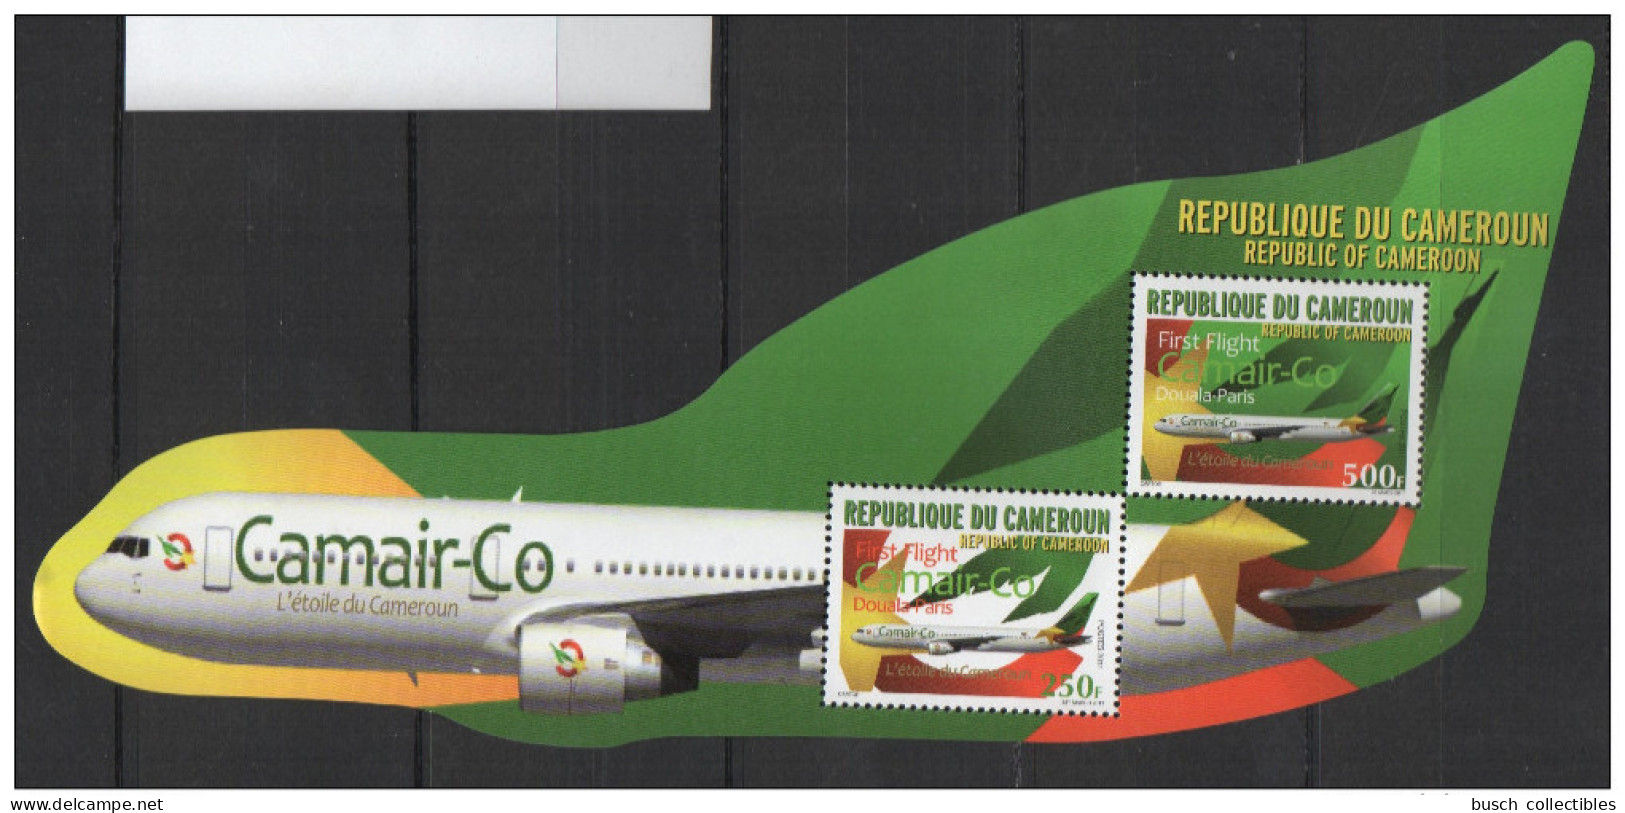 Cameroun Cameroon Kamerun 2011 Mi. 1266 - 1267 Bl. 38 First Flight Douala-Paris Camair-Co Avion Flugzeug Airplane S/S - Cameroun (1960-...)